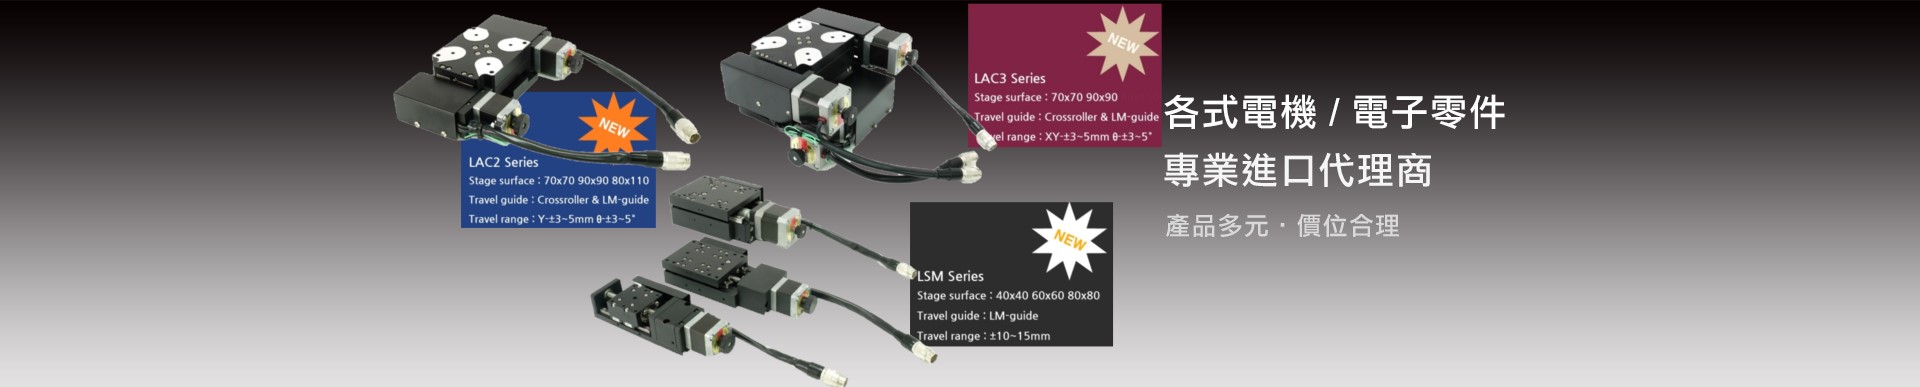 LSM-LAC2-LAC3電動滑台